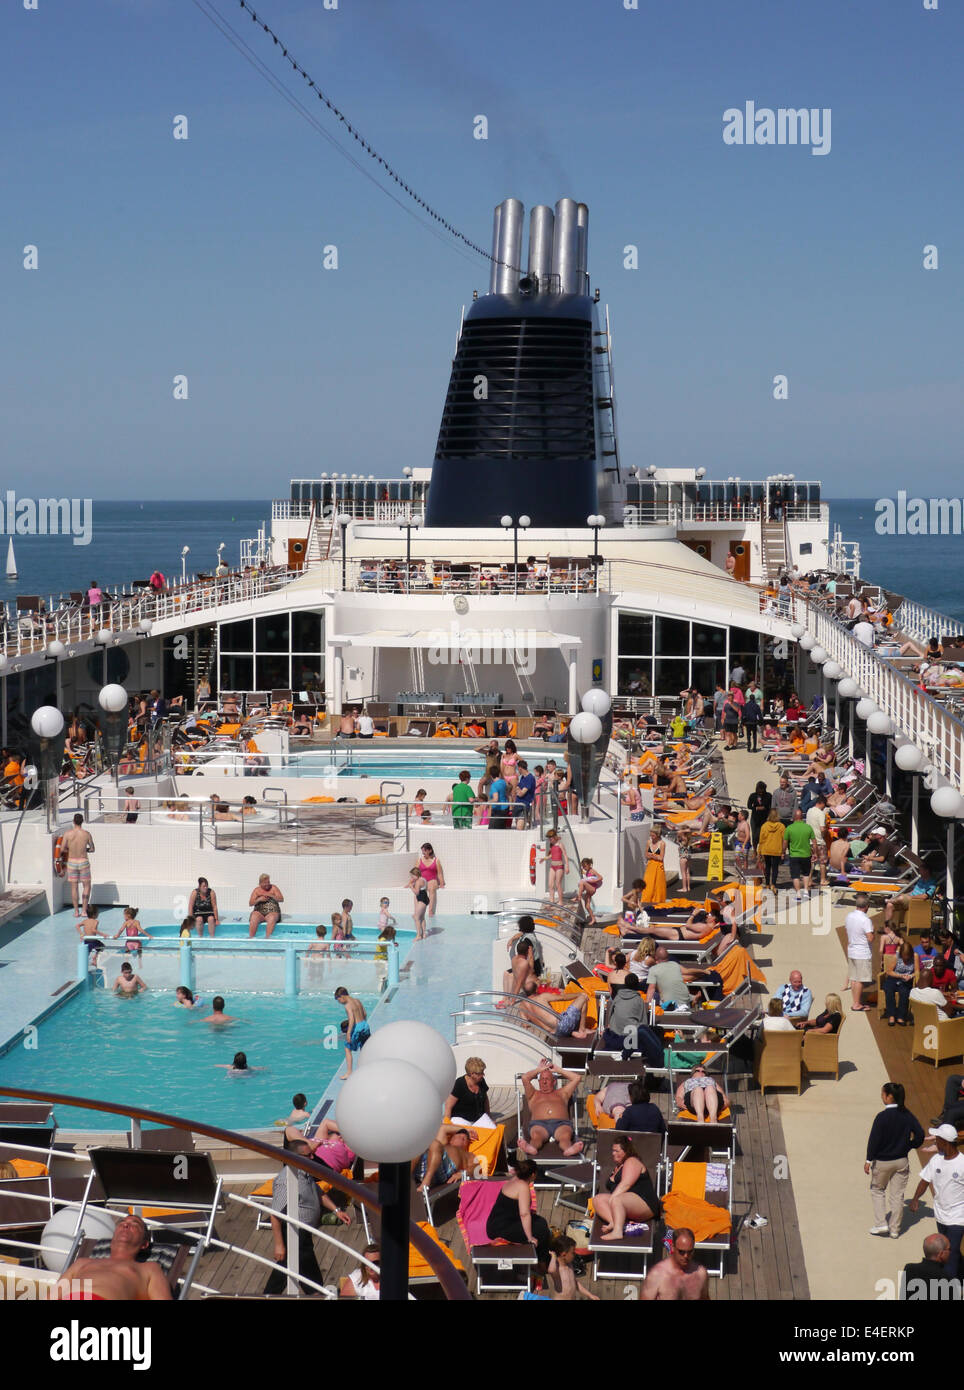 La parte superior de la cubierta de un barco de crucero ocupado con gente  sentada alrededor de la piscina en un día soleado Fotografía de stock -  Alamy